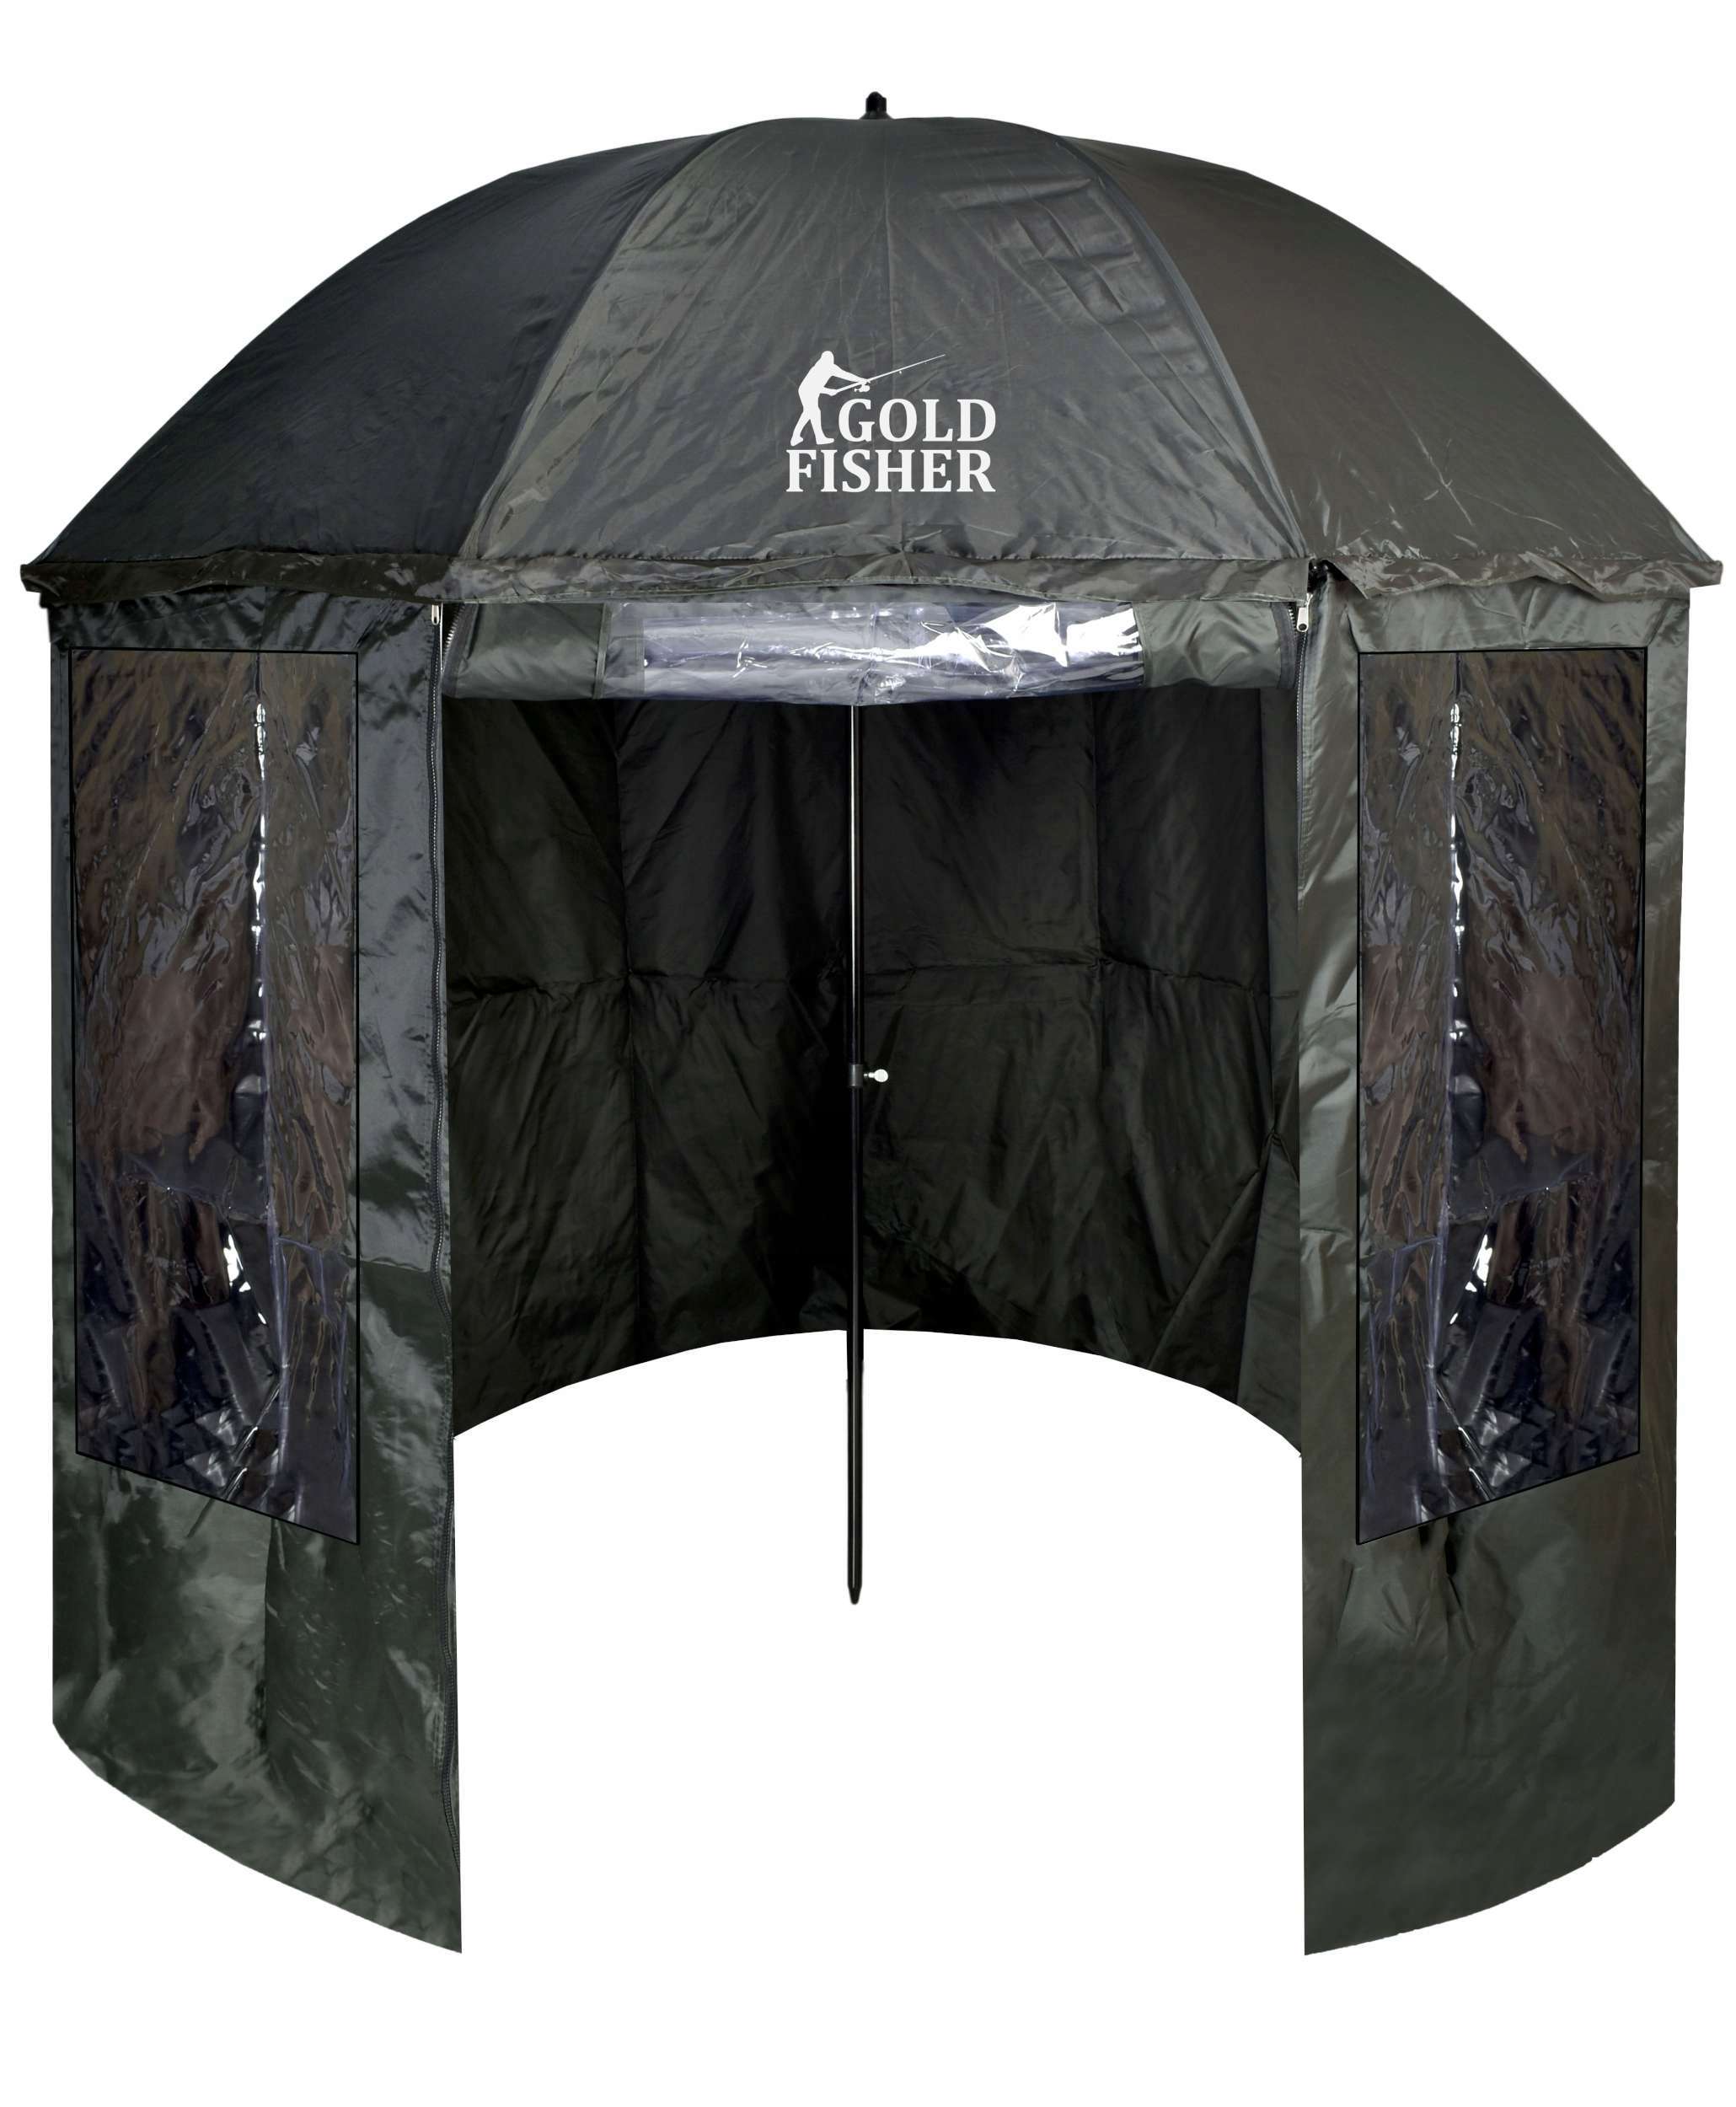 Parasol wędkarski namiot z osłoną JUKON ciemnozielony